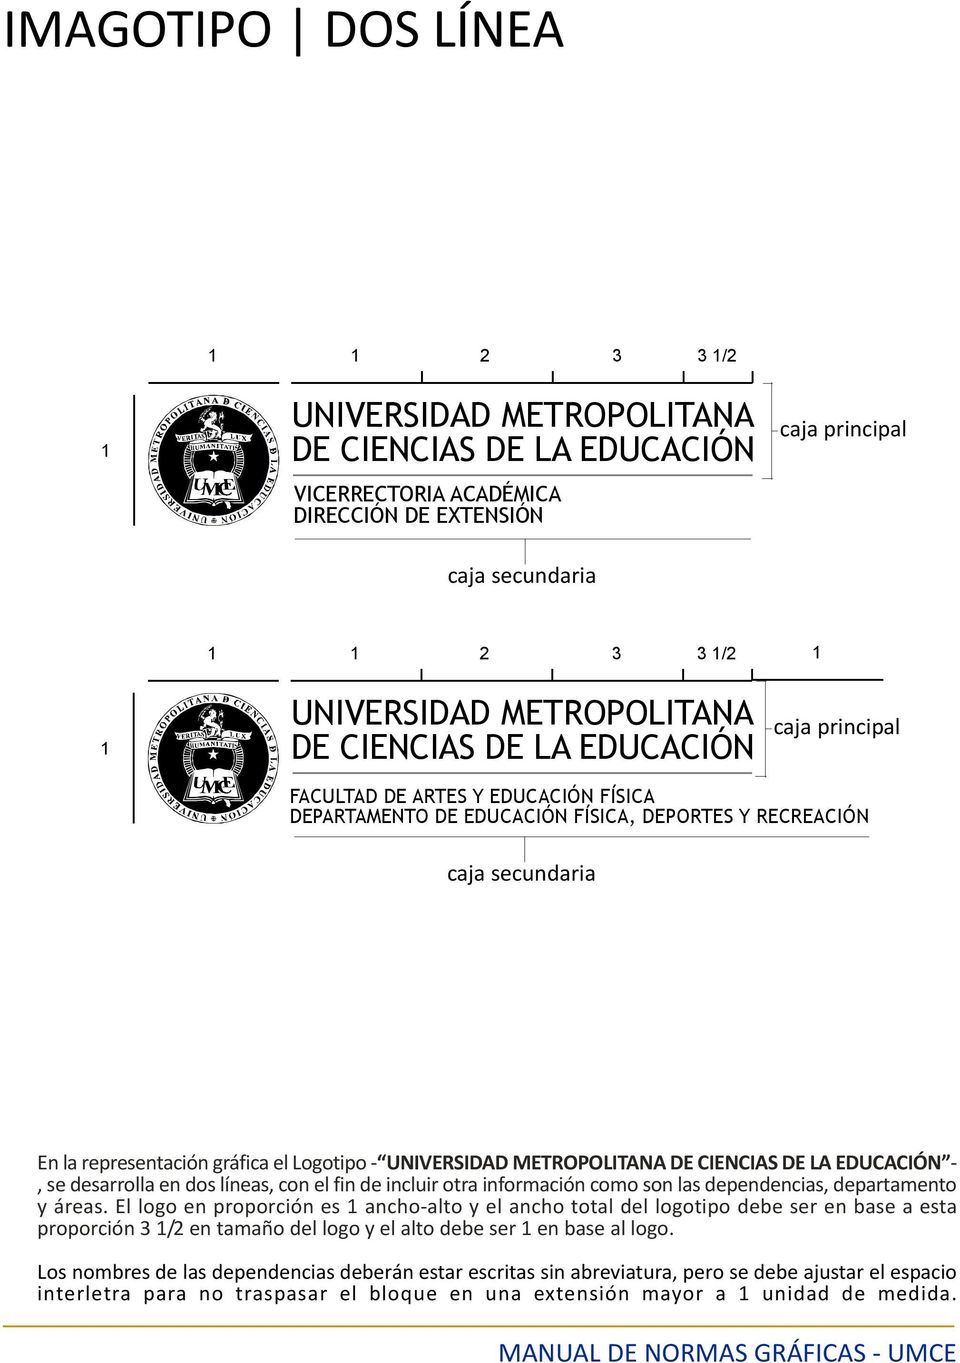 Logotipo UNIVERSIDAD METROPOLITANA DE CIENCIAS DE LA EDUCACIÓN, se desarrolla en dos líneas, con el fin de incluir otra información como son las dependencias, departamento y áreas.